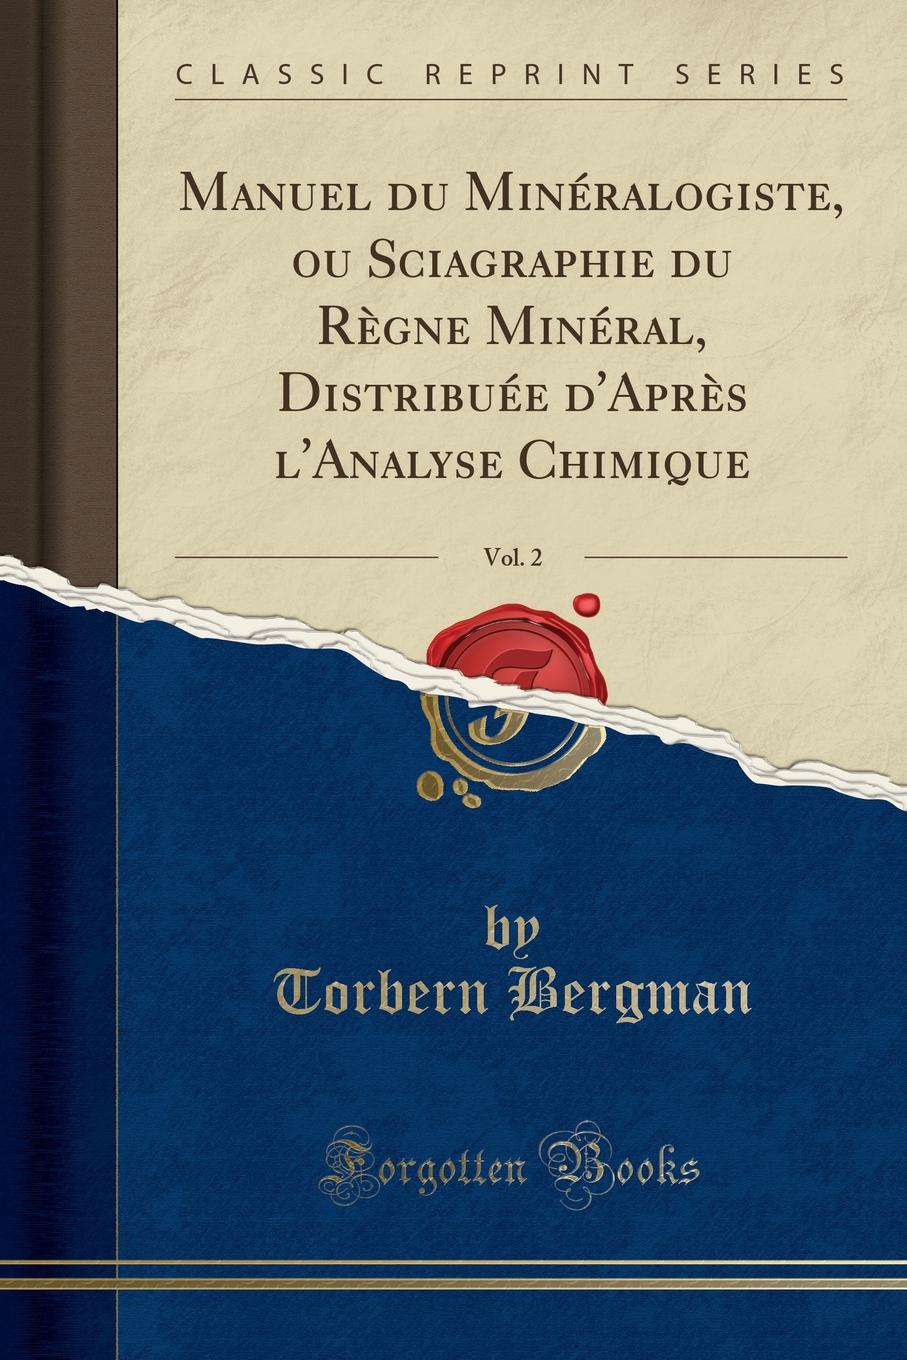 Manuel du Mineralogiste, ou Sciagraphie du Regne Mineral, Distribuee d.Apres l.Analyse Chimique, Vol. 2 (Classic Reprint)